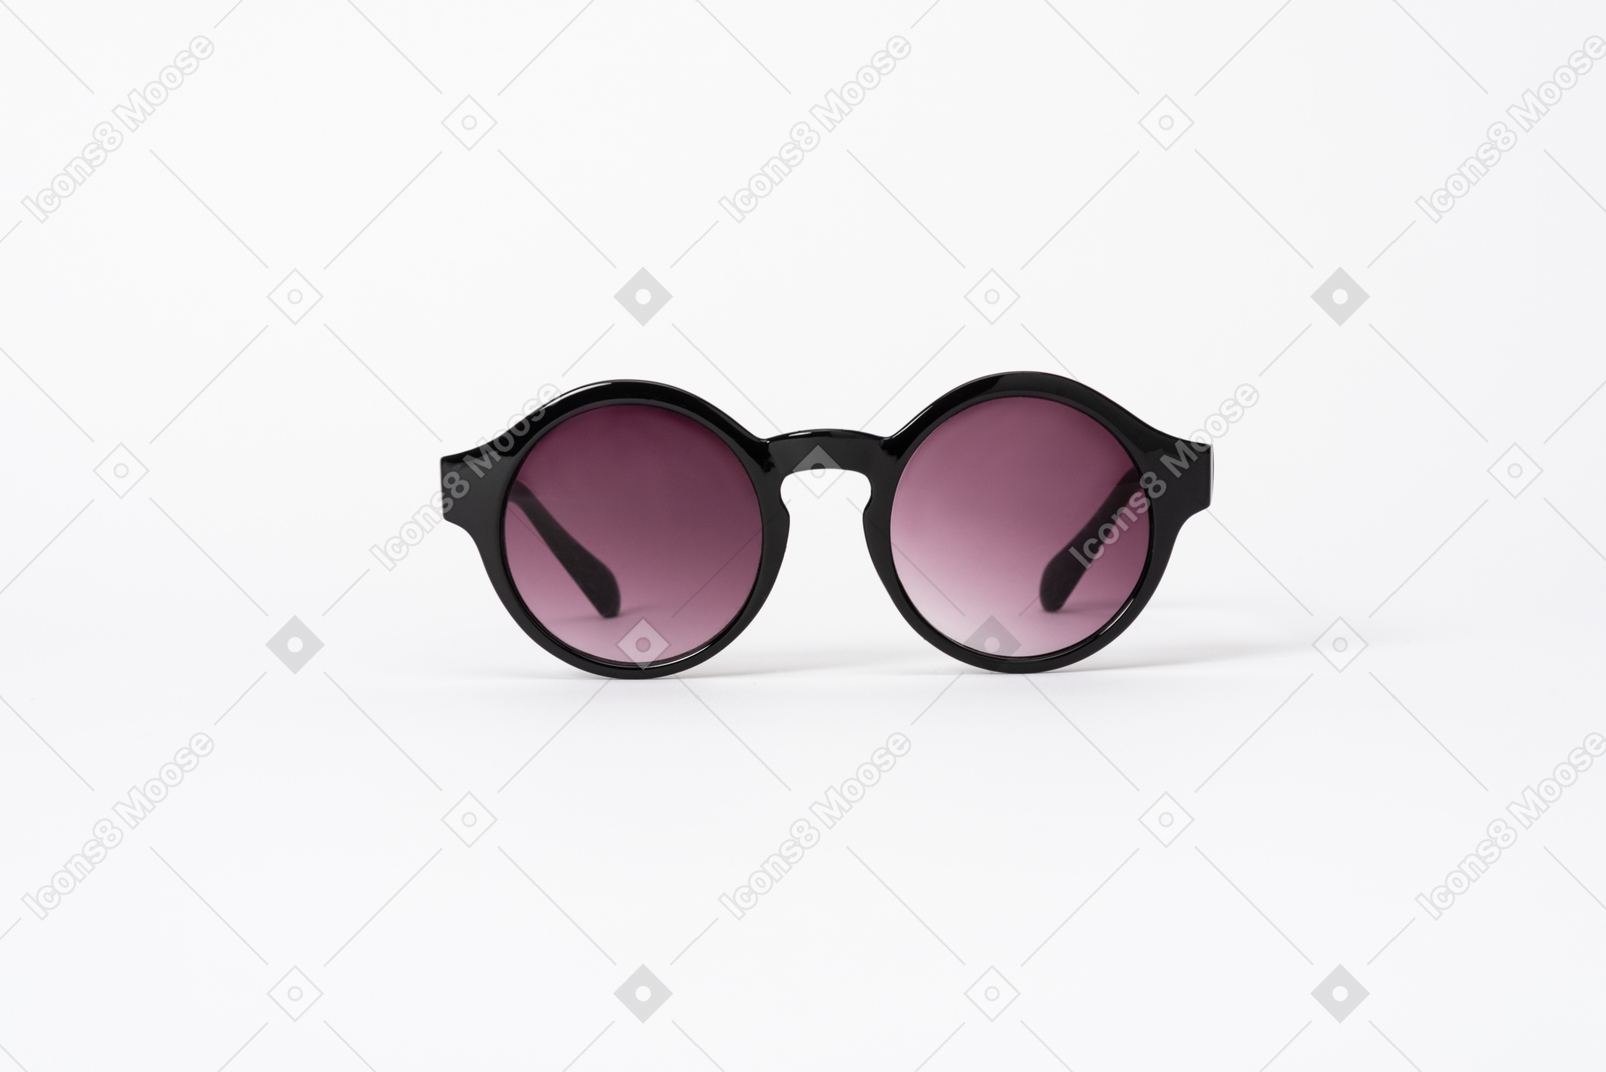 Une paire de lunettes de soleil rondes